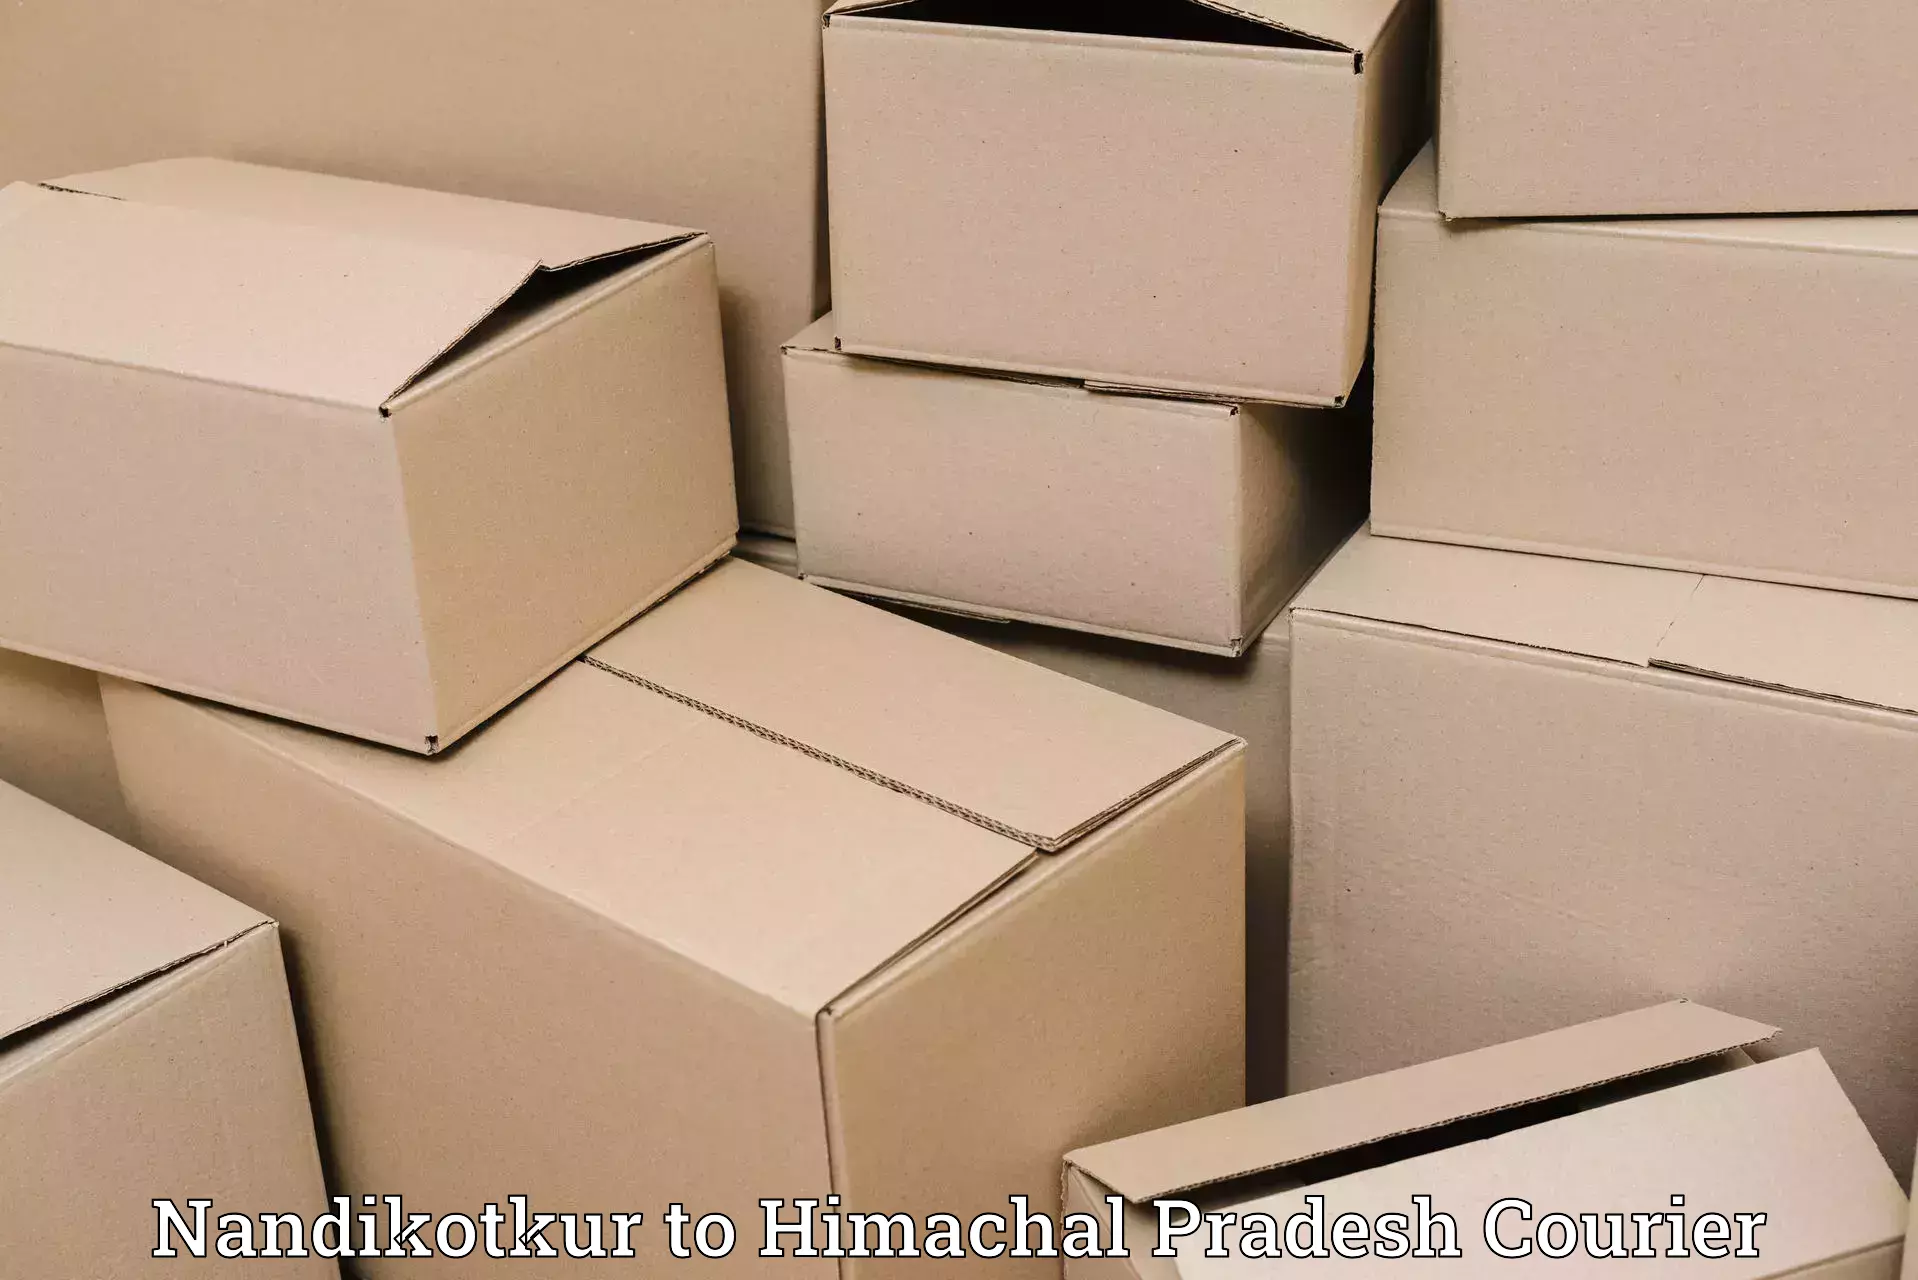 Reliable package handling in Nandikotkur to Himachal Pradesh